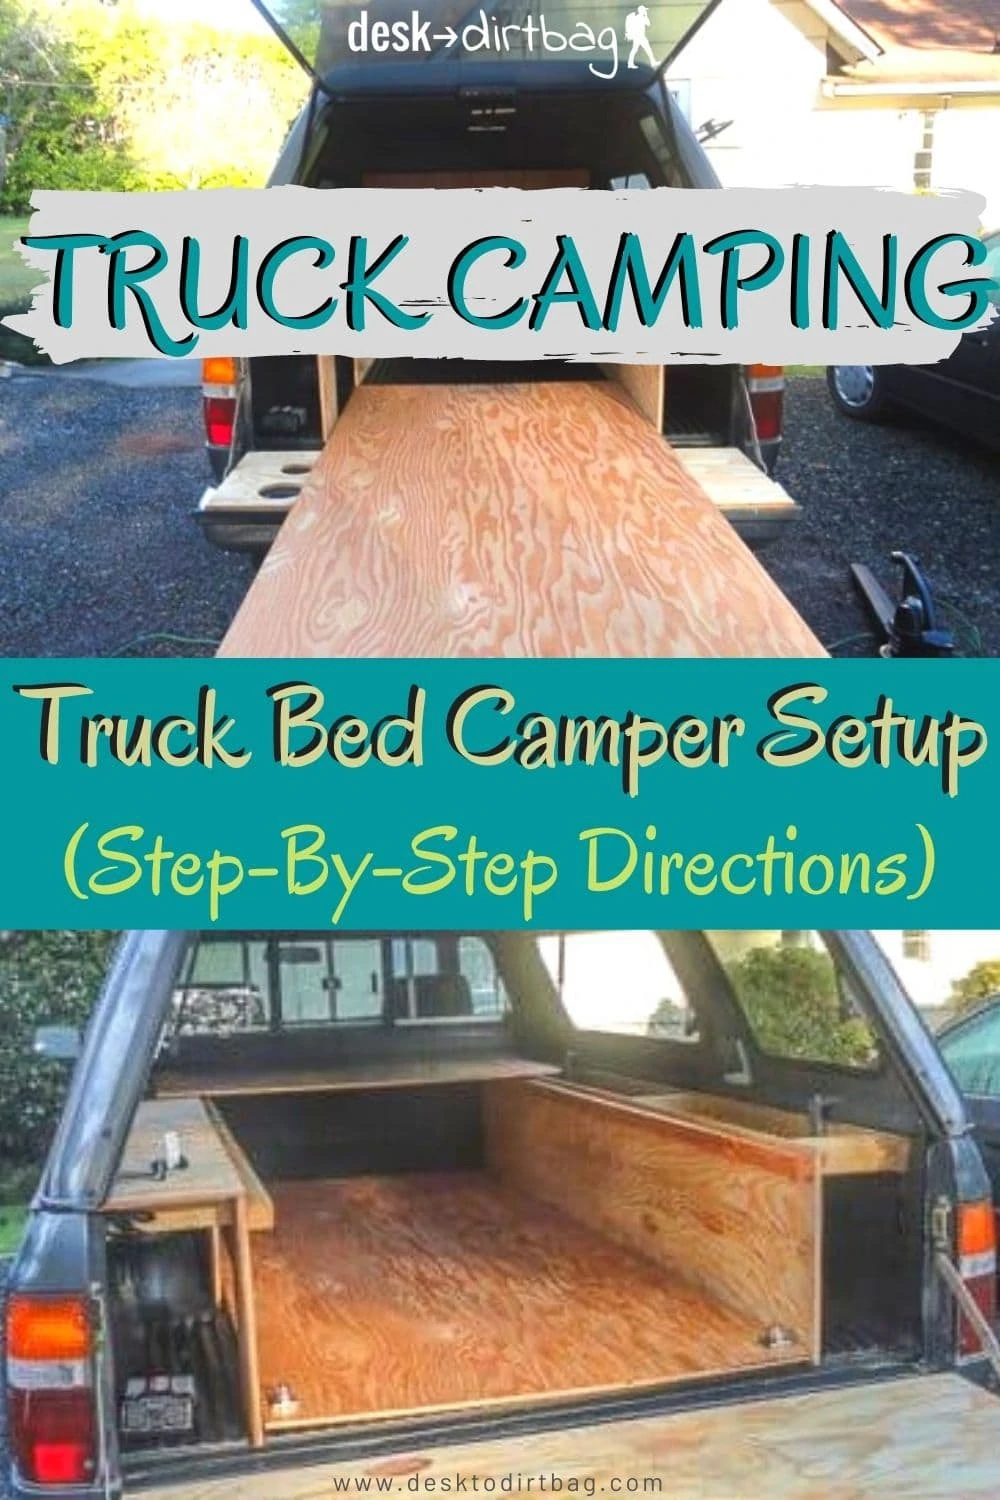 https://www.desktodirtbag.com/wp-content/uploads/2017/07/how-to-build-truck-bed-camper-setup-3.webp